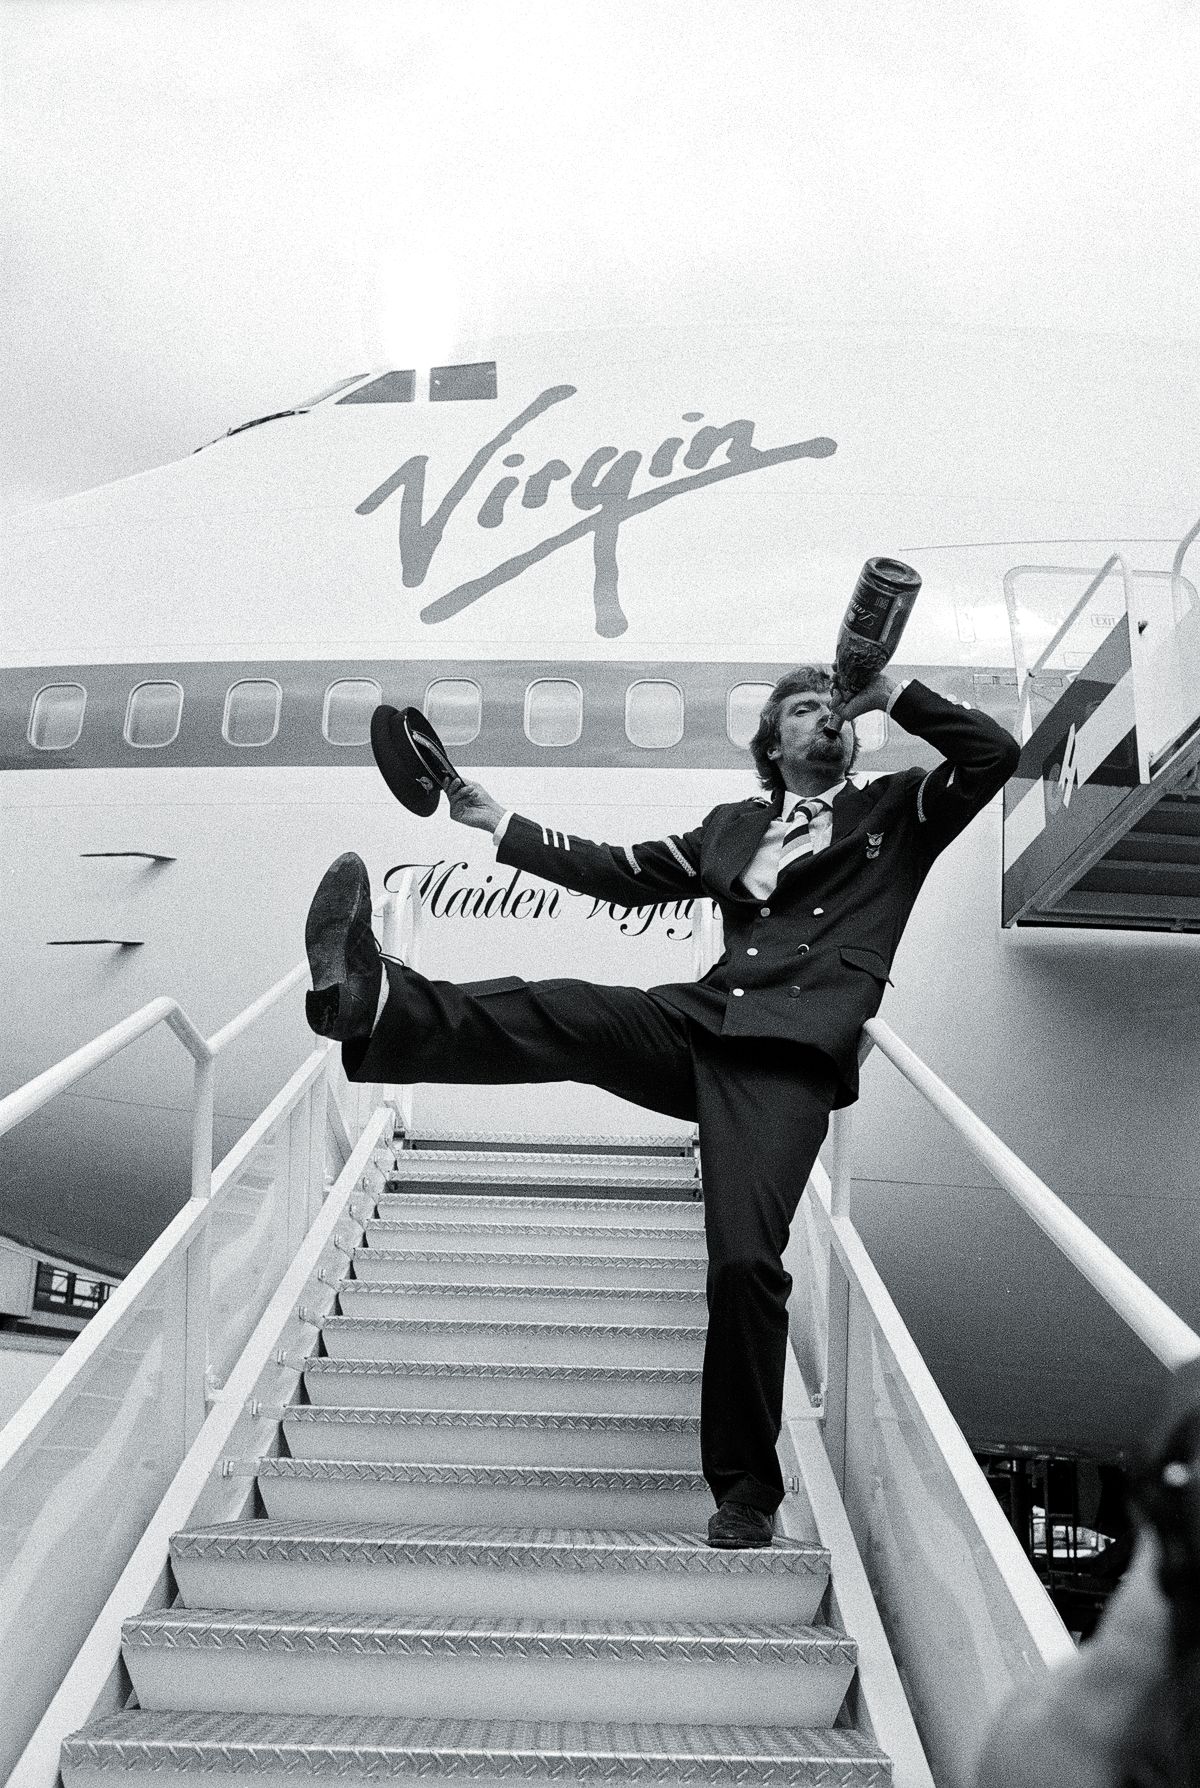 Ричард Брэнсон открывает свою новую авиакомпанию Virgin Atlantic Airways